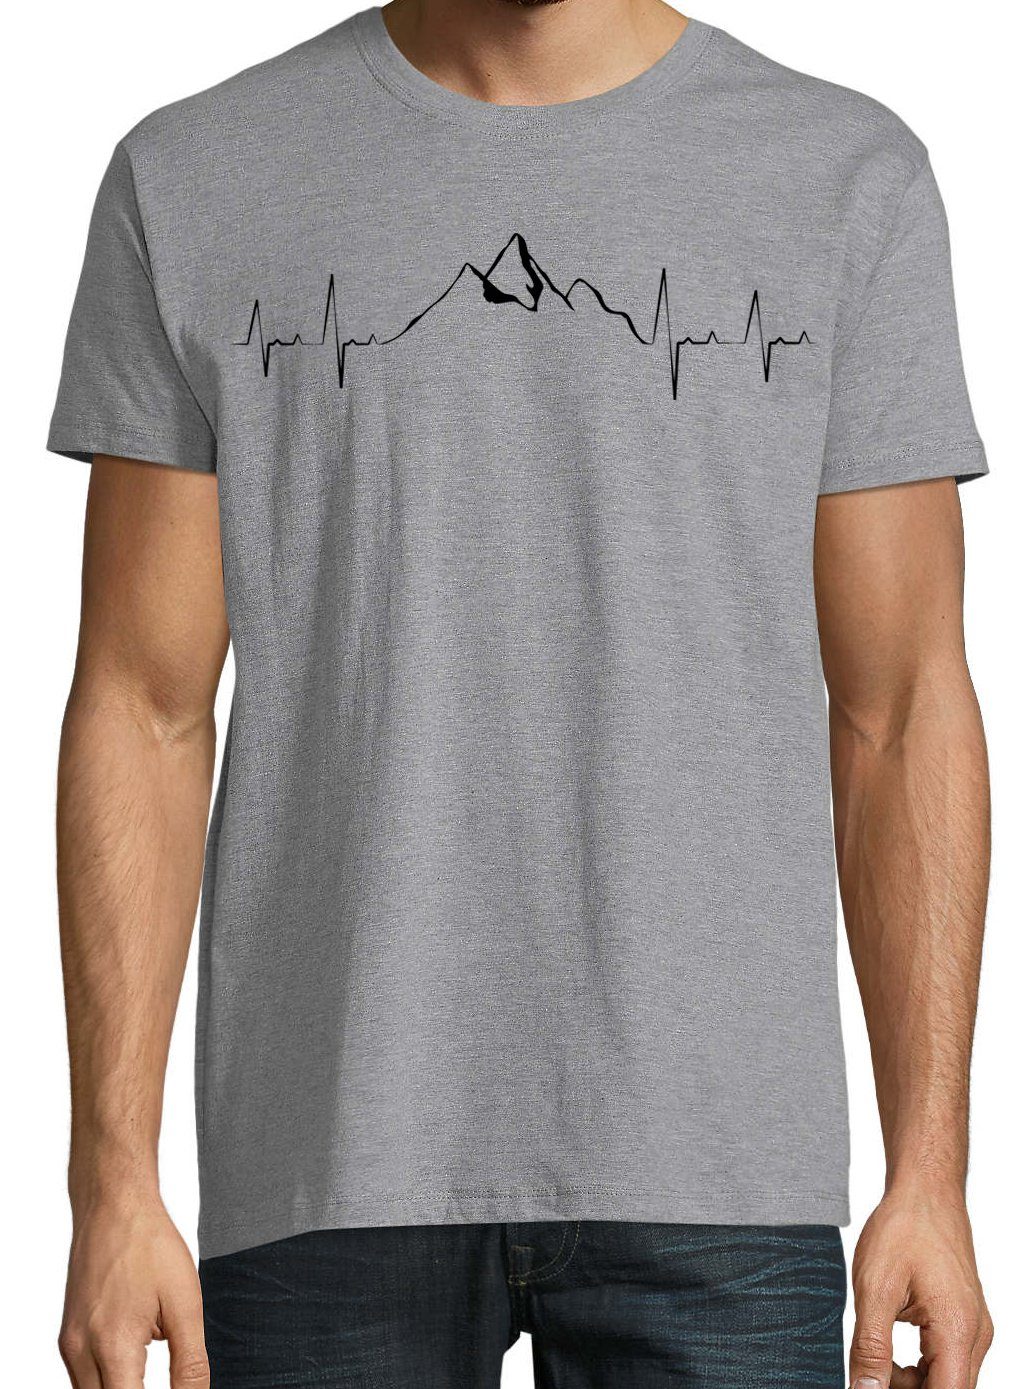 Grau T-Shirt Designz trendigem Mountain Heartbeat mit Frontprint Youth Herren Shirt